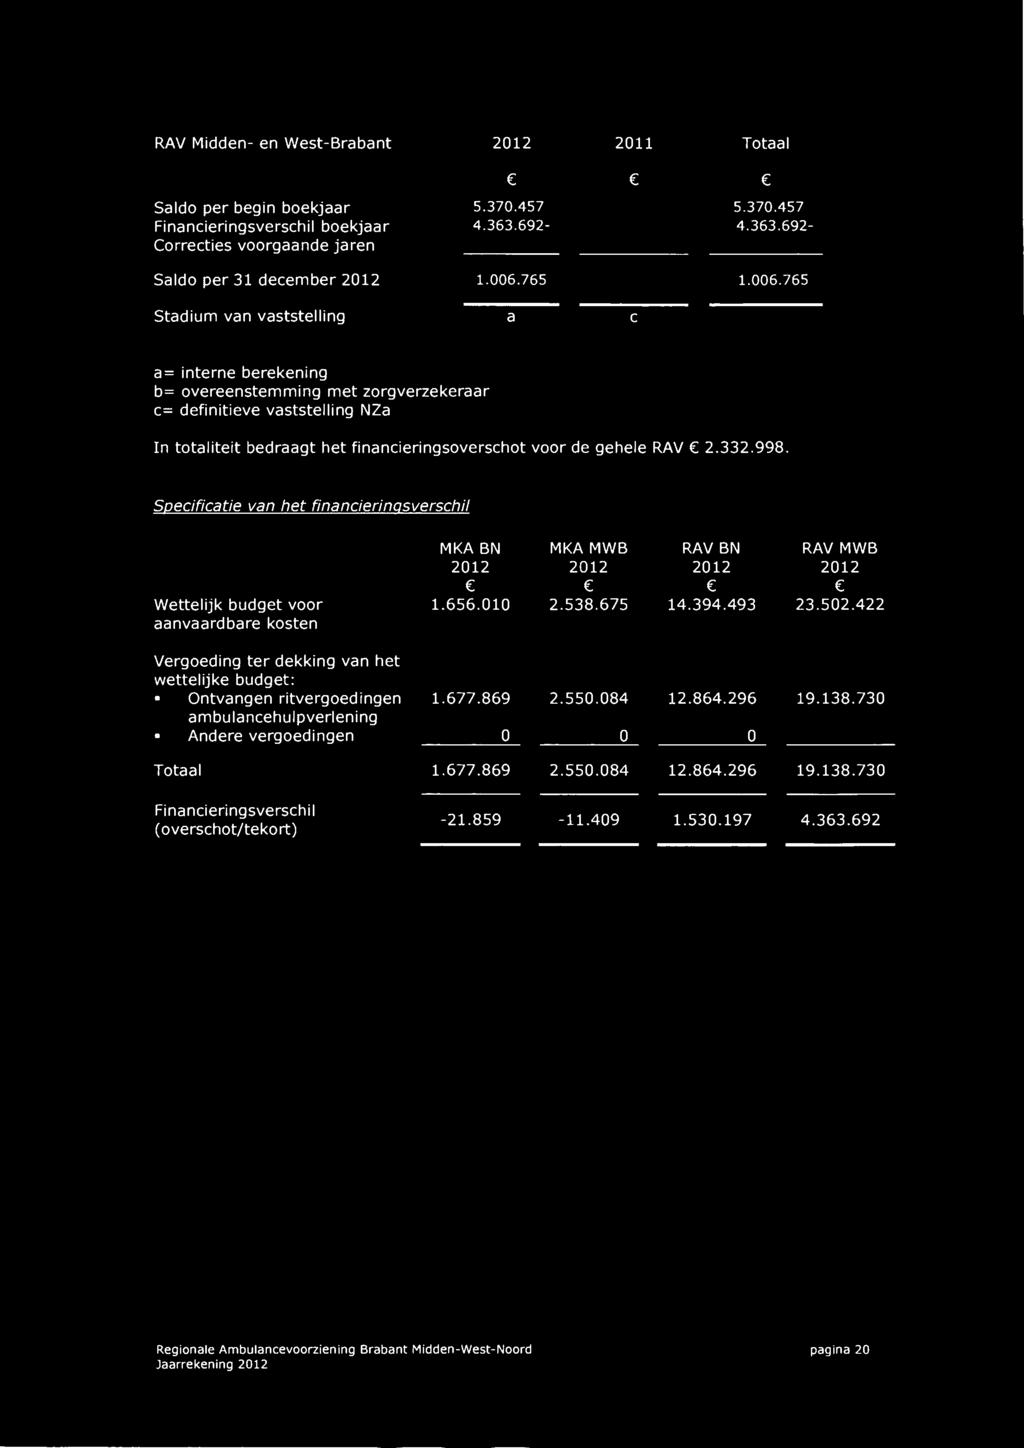 gehele RAV 2.332.998. Specificatie van het financierinqsverschil Wettelijk budget voor aanvaardbare kosten MKA BN 2012 ( 1.656.010 MKA MWB 2012 c 2.538.675 RAV BN 2012 e 14.394.493 RAV MWB 2012 ( 23.